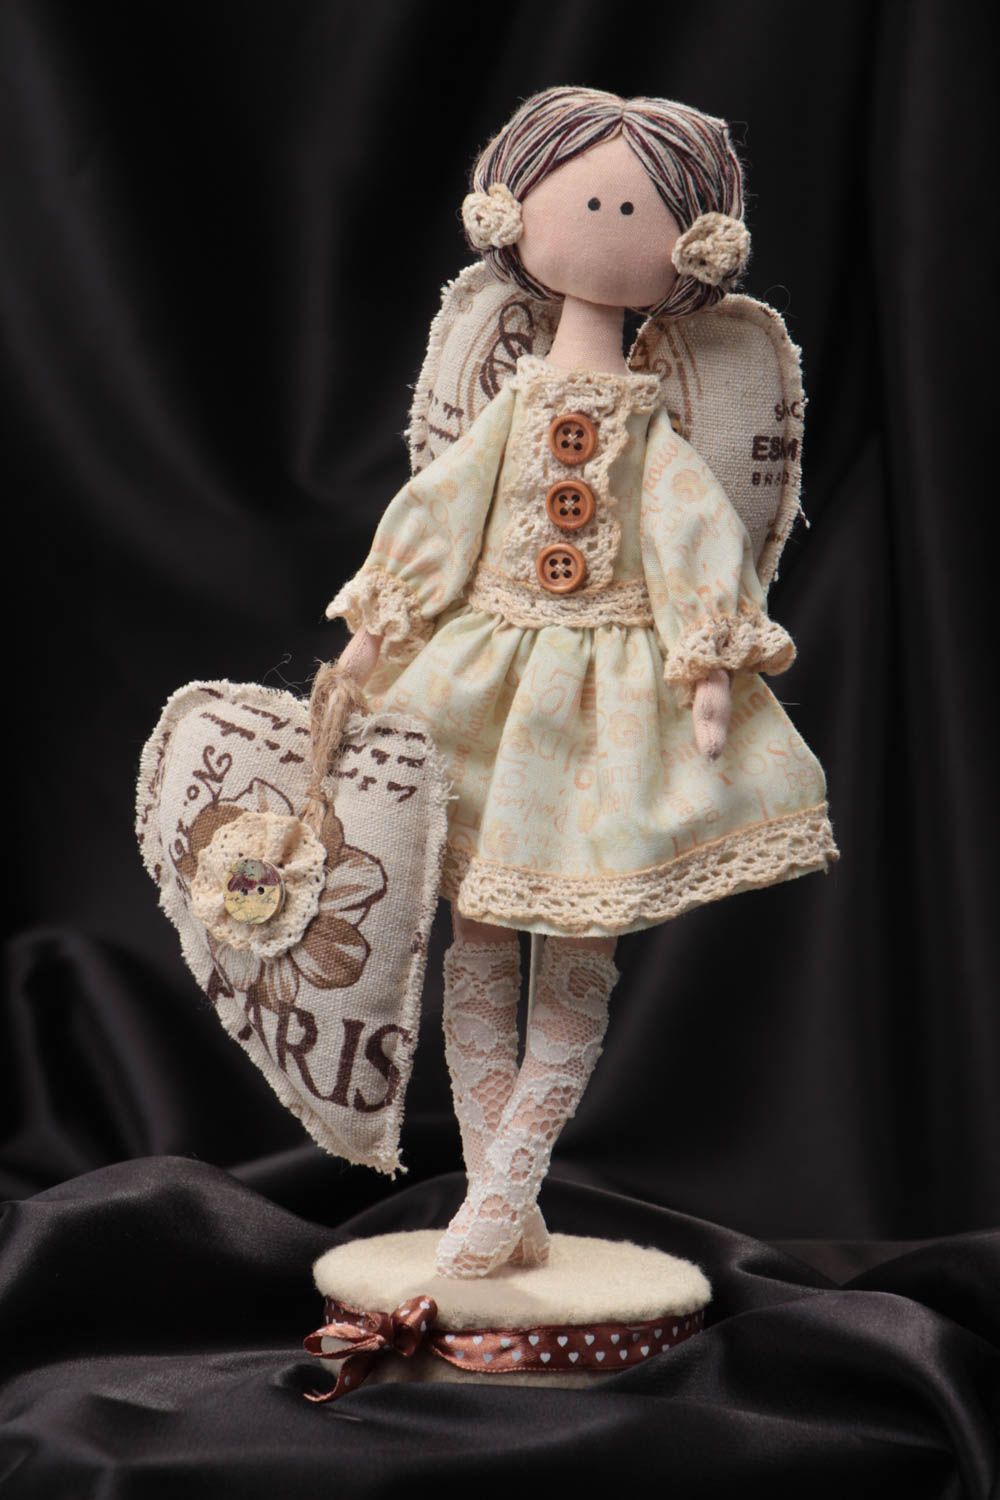 Авторская кукла из ткани на подставке красивая ручной работы из хлопка и льна Англел фото 1